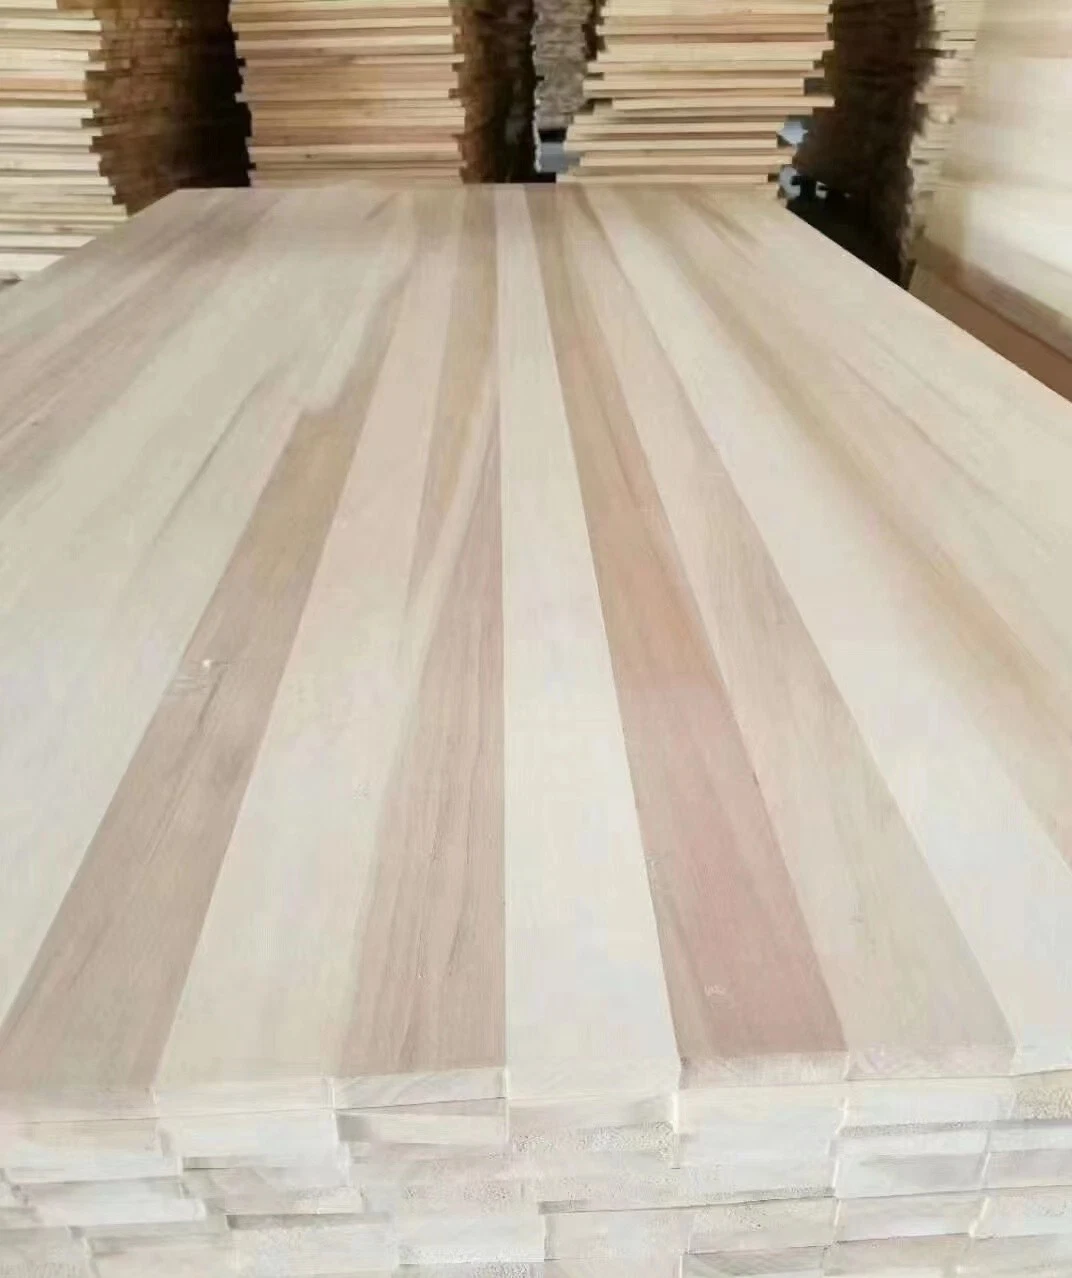 Lumber Solid Board White Wood Timber Wood Pine Hardwood Lumber Poplar Wood